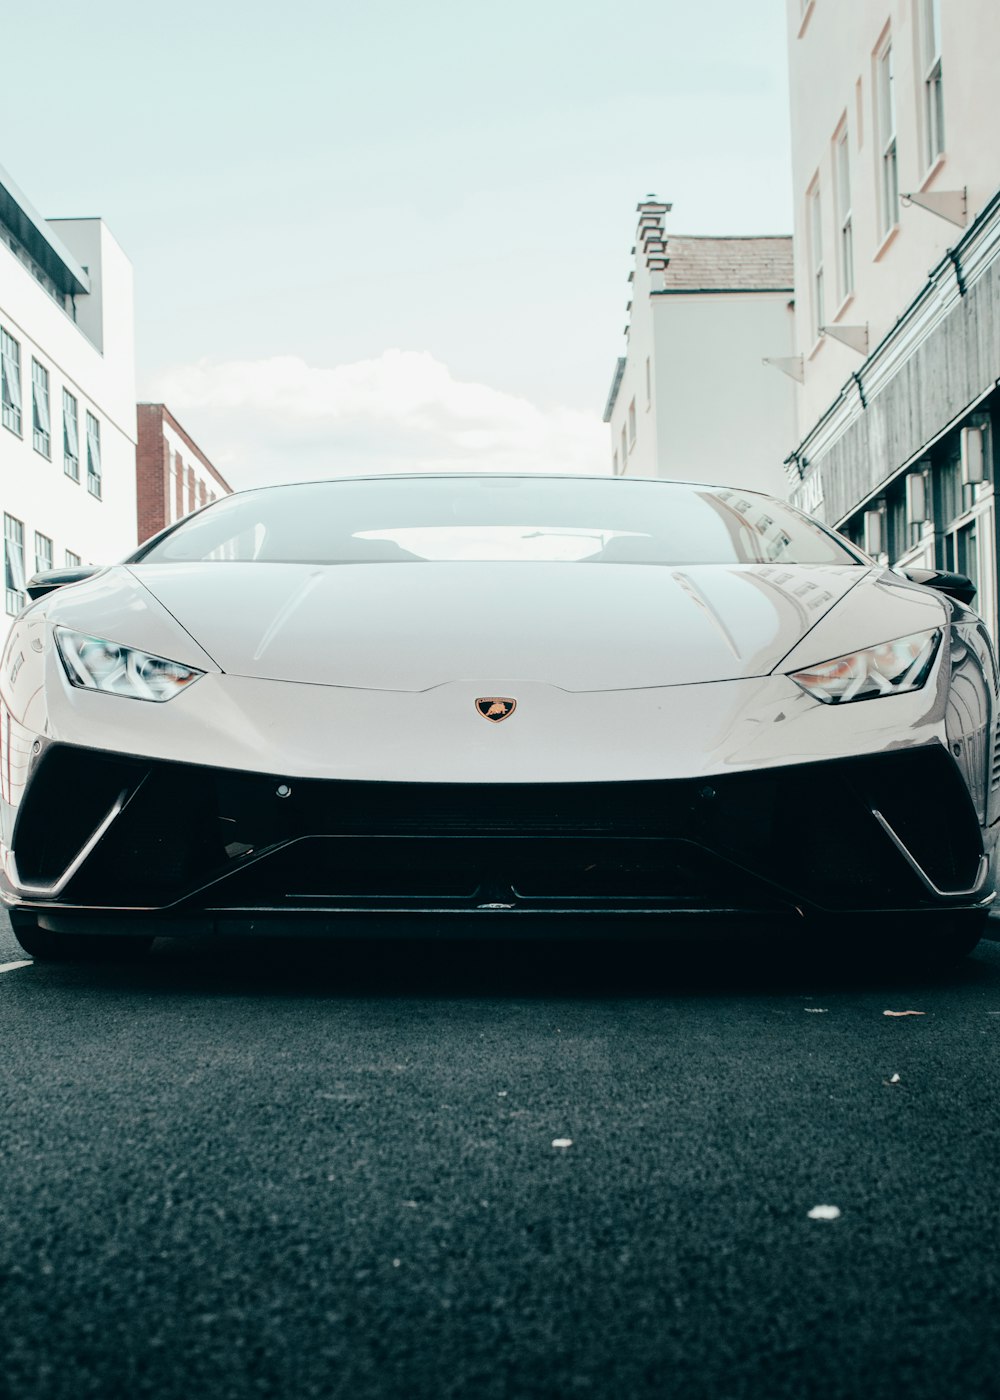 Lamborghini Aventador blanche garée sur la route pendant la journée